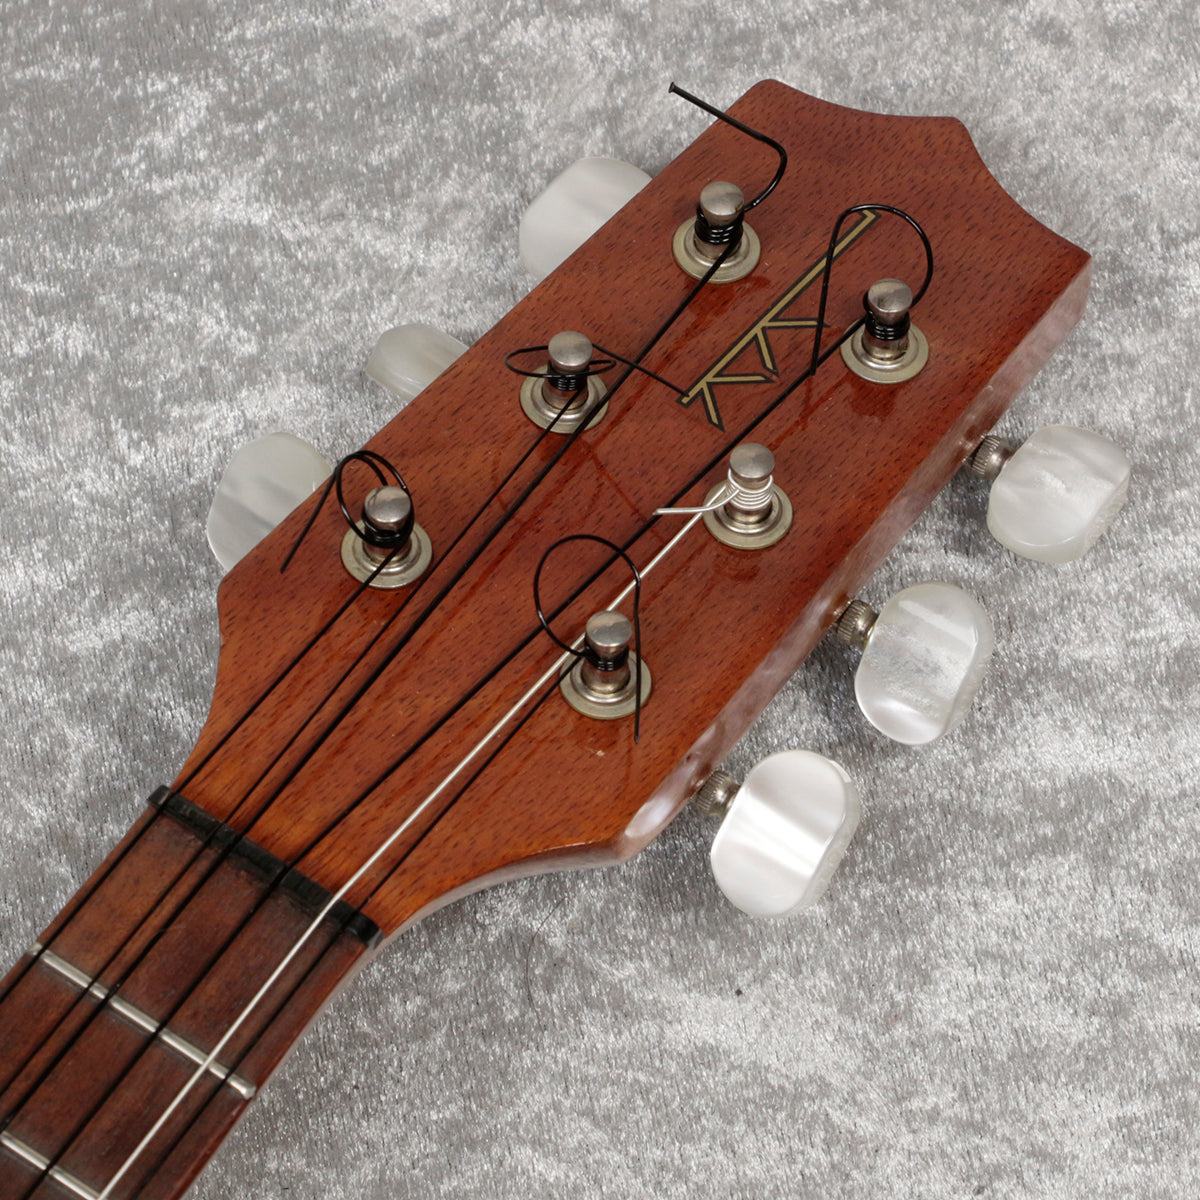 USED KAMAKA / HF-36 Tenor 6-string ukulele [06]